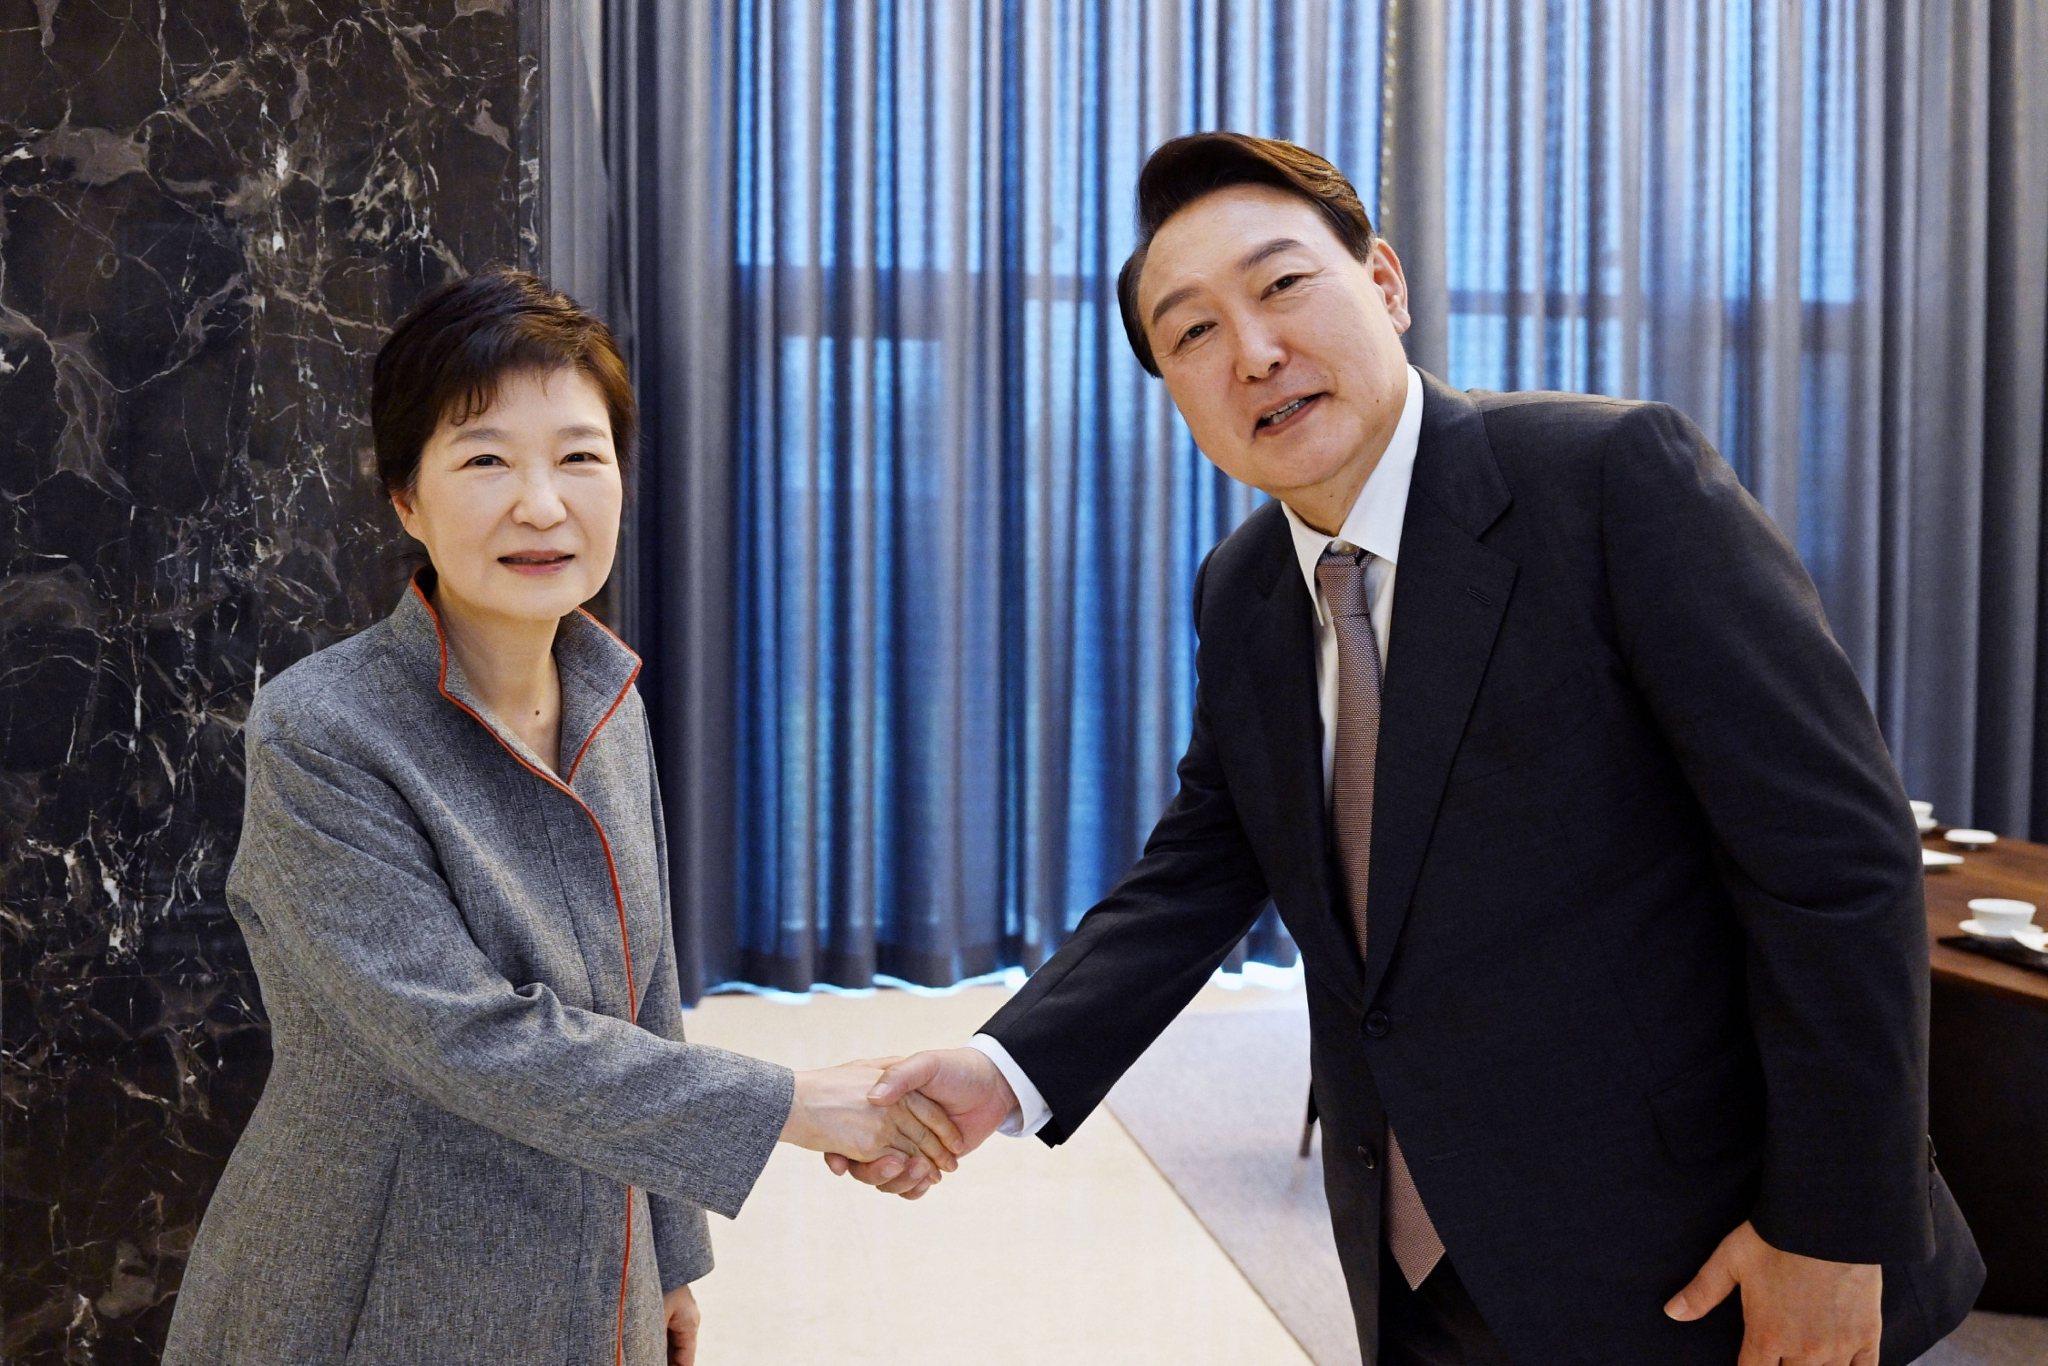 尹锡悦12日前往大邱拜访前总统朴槿惠，邀请朴槿惠出席总统就职典礼。